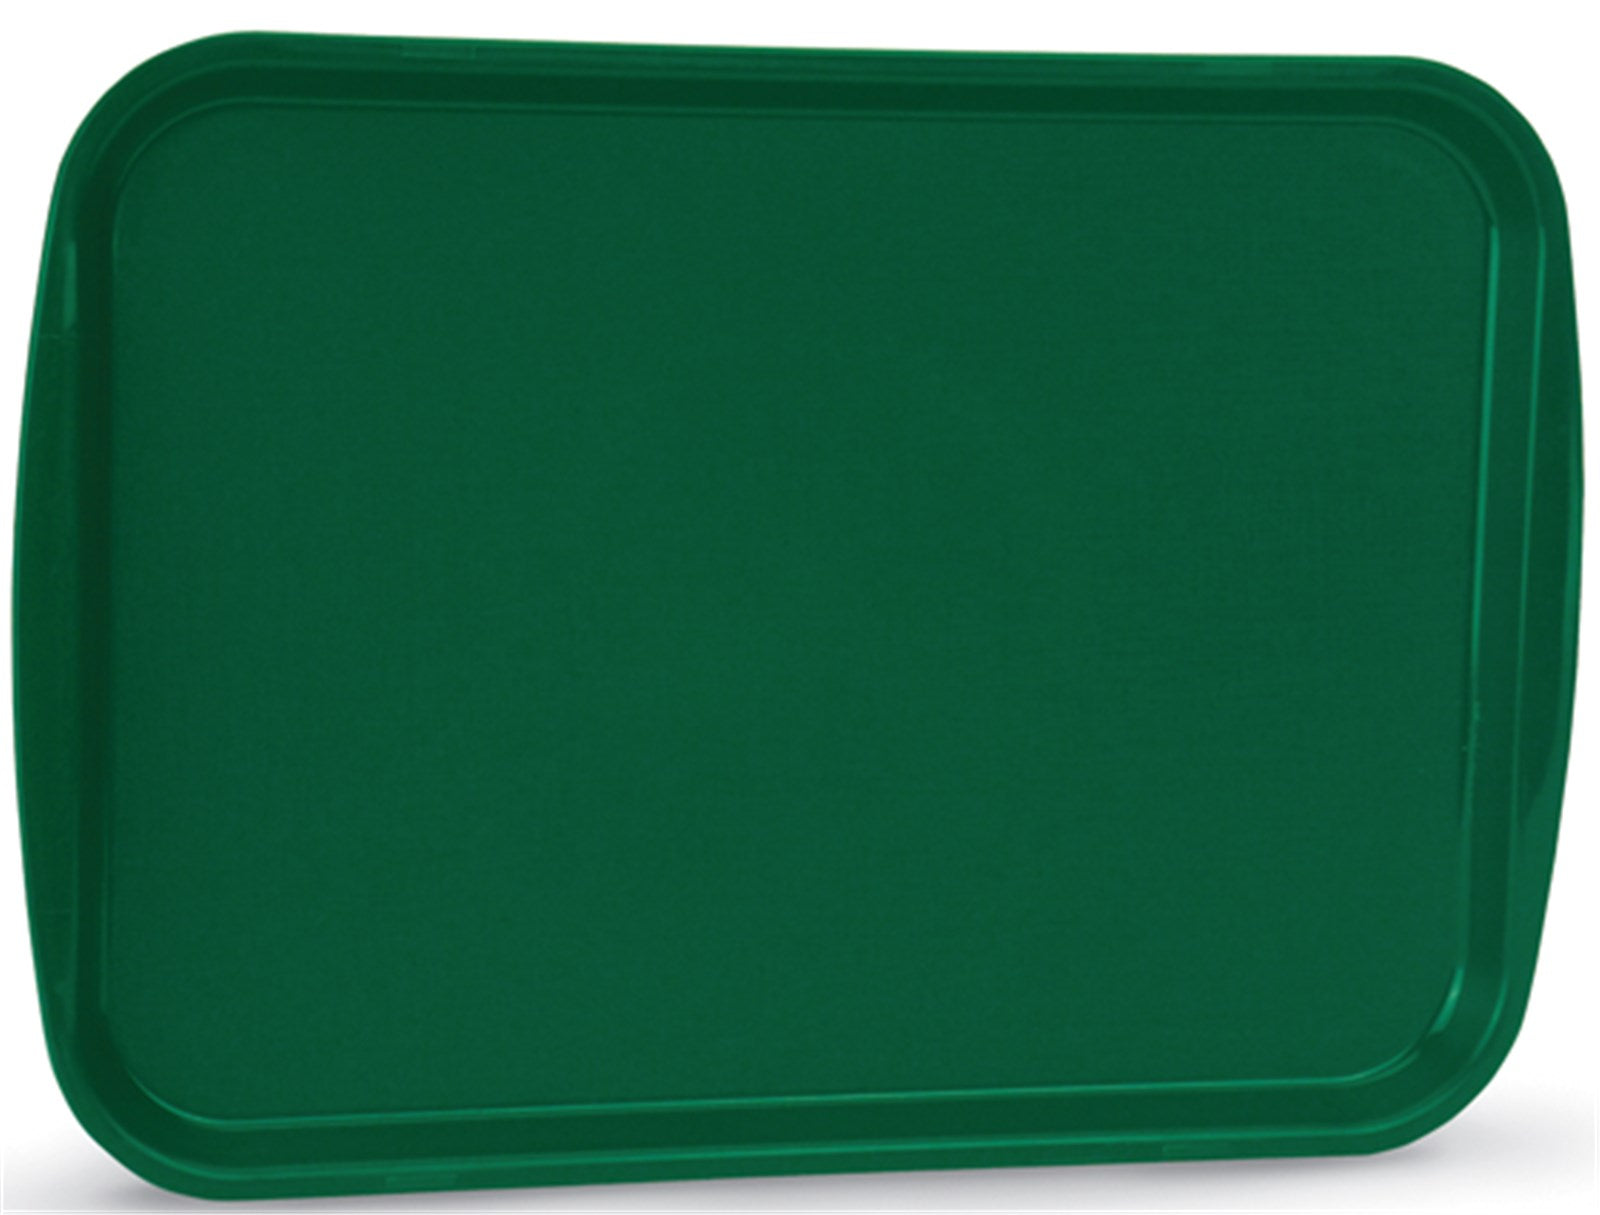 Fast Food Tablett grün 35.6 x 45.7cm in Grün präsentiert im Onlineshop von KAQTU Design AG. Tablett ist von Vollrath